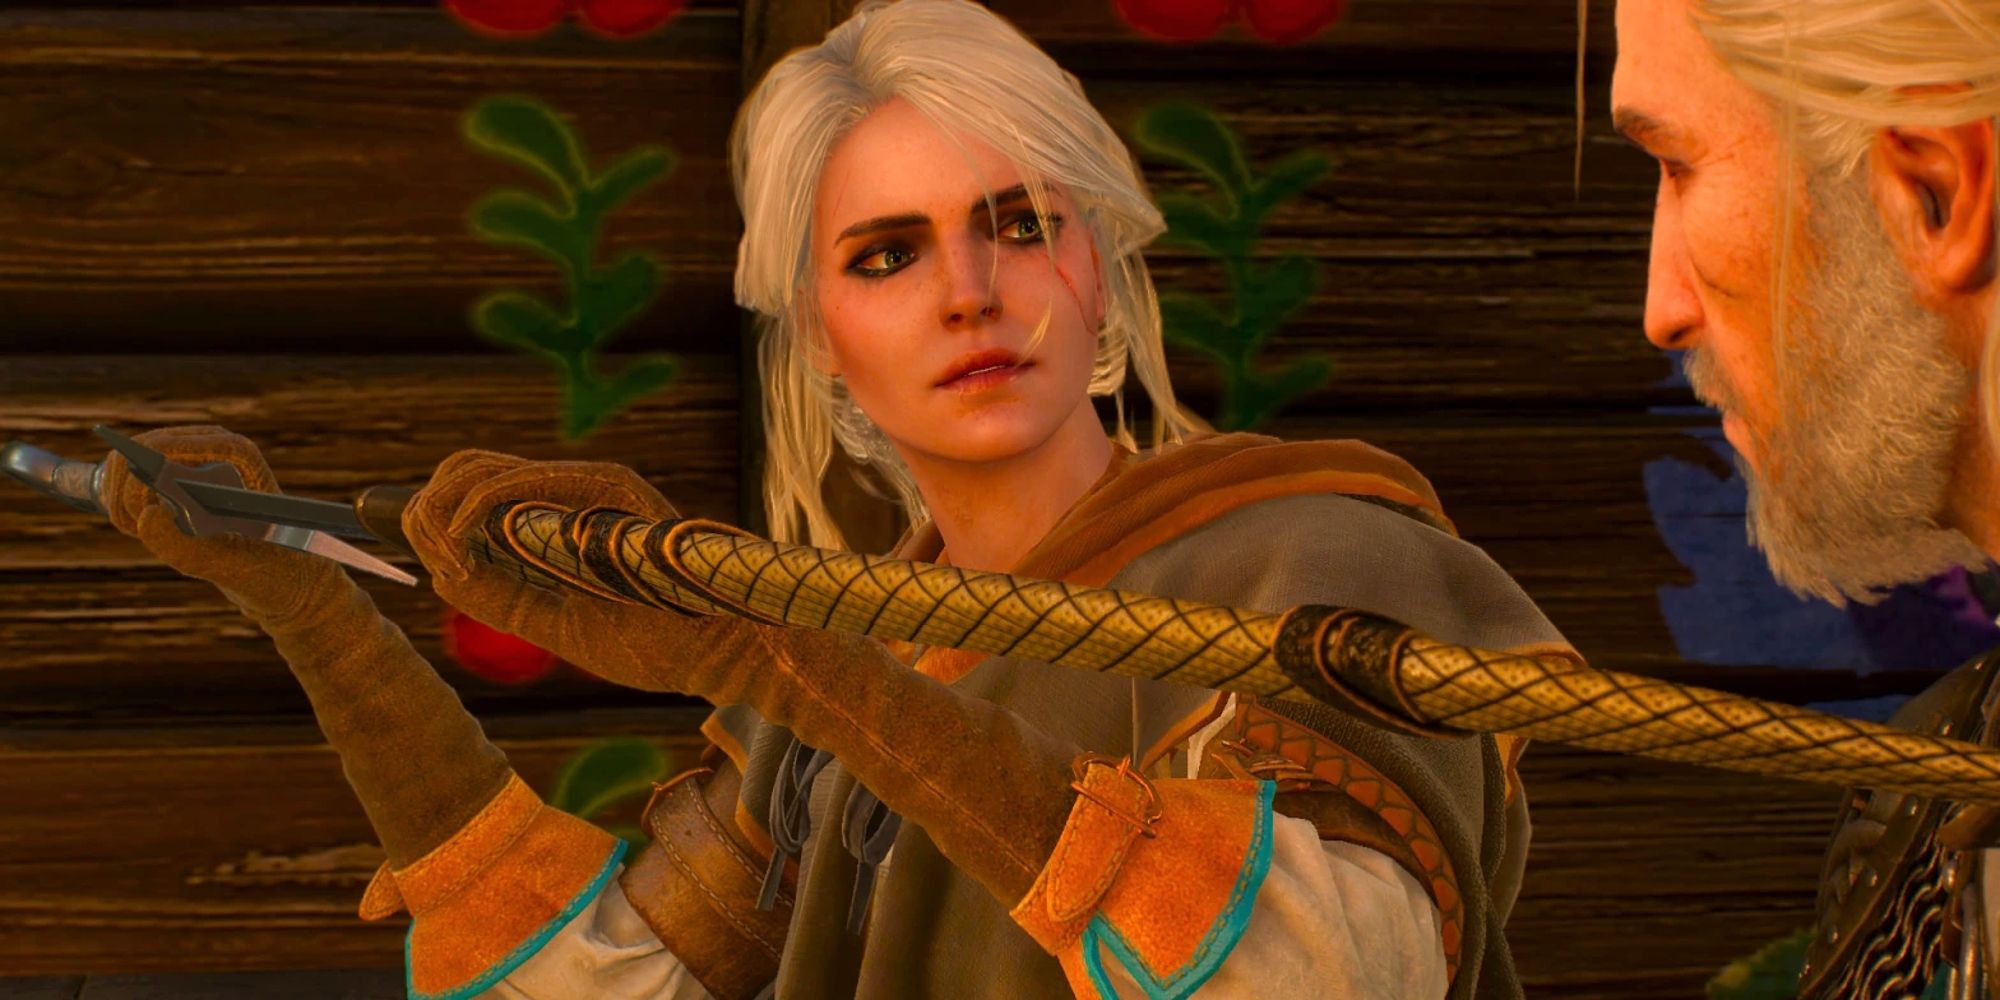 Imagem de Ciri desembainhando a espada Witcher que Geralt a presenteou enquanto observa.